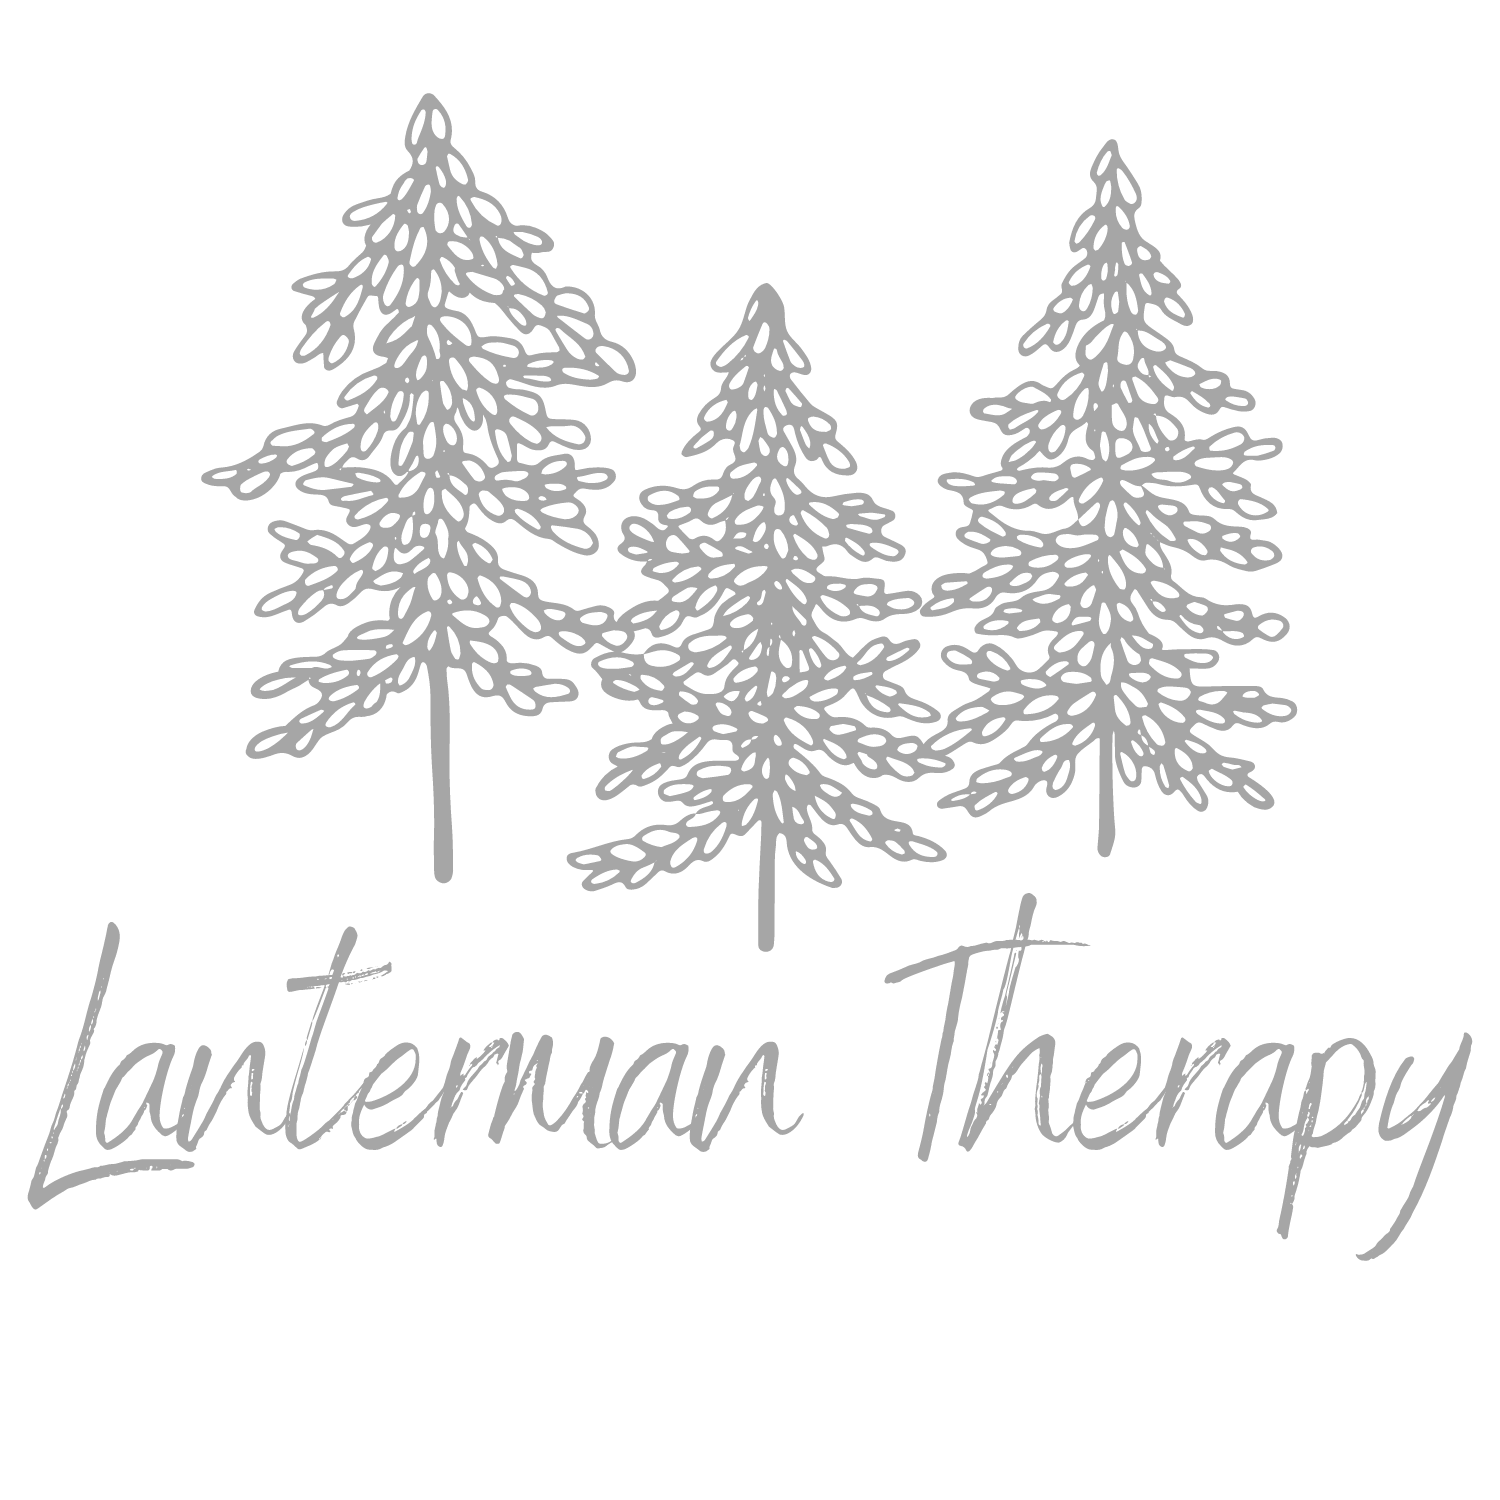 Chris Lanterman Therapy